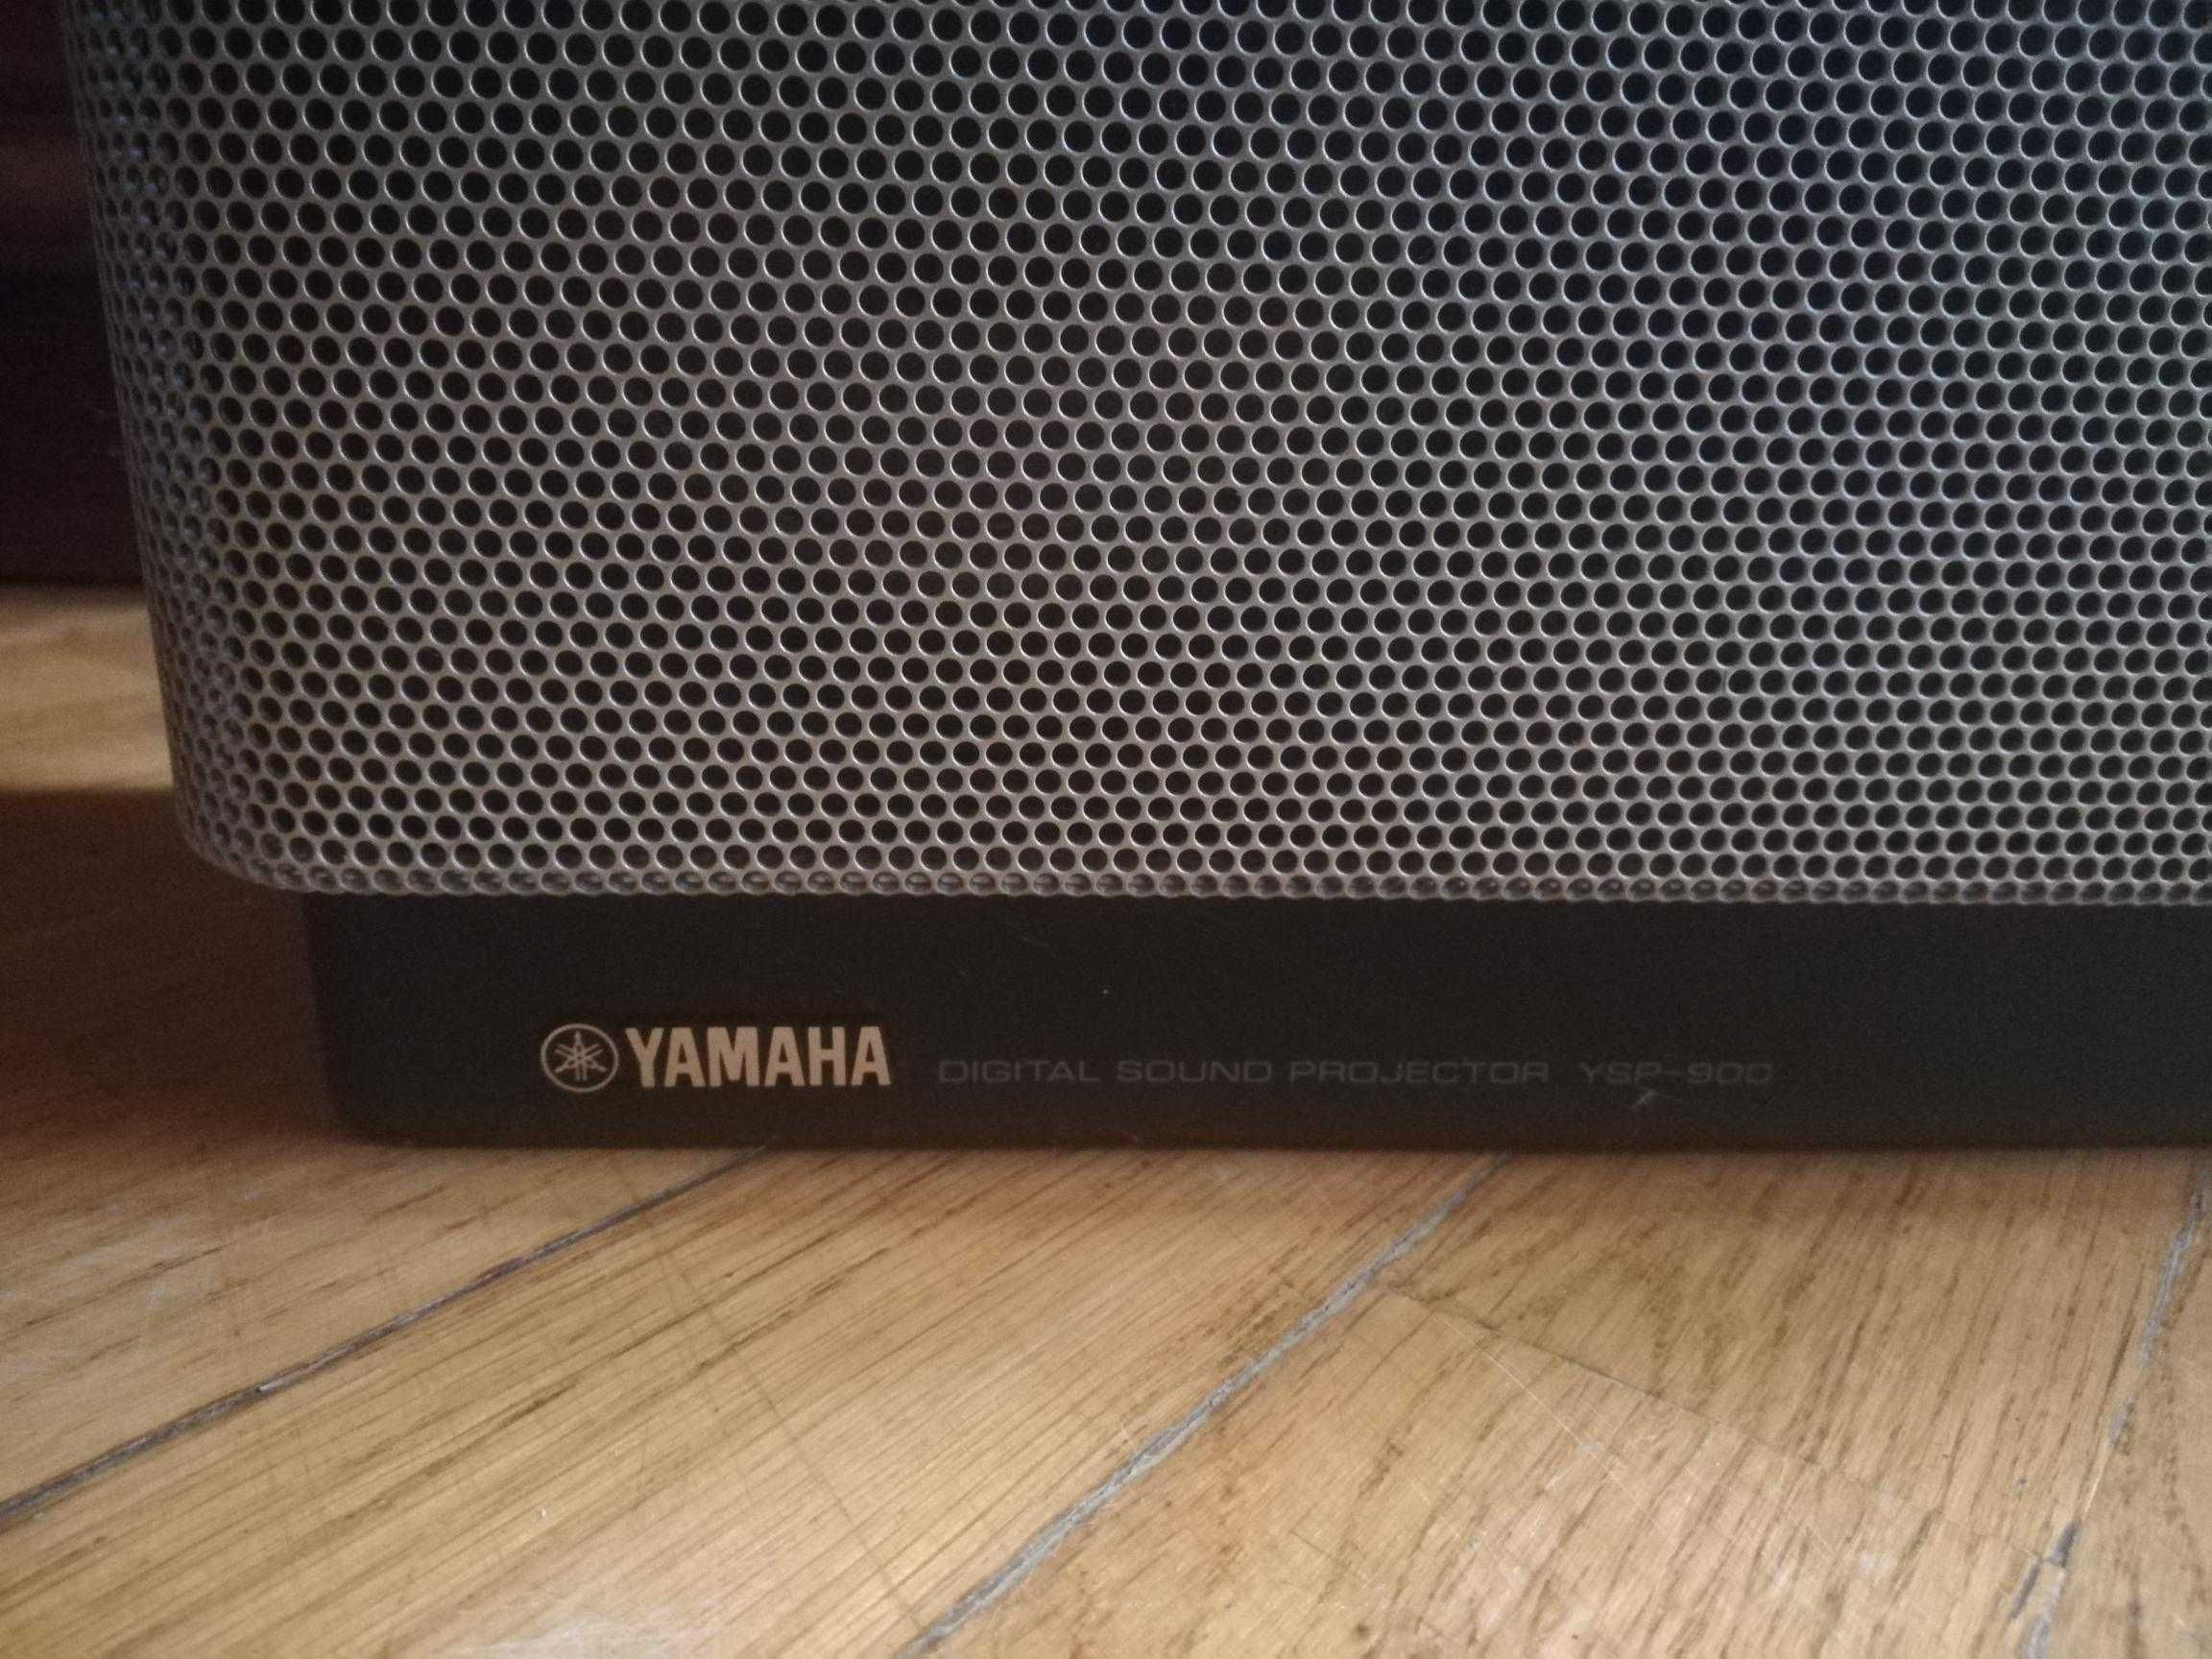 Звуковой проектор объёмного звучания Yamaha YSP-900